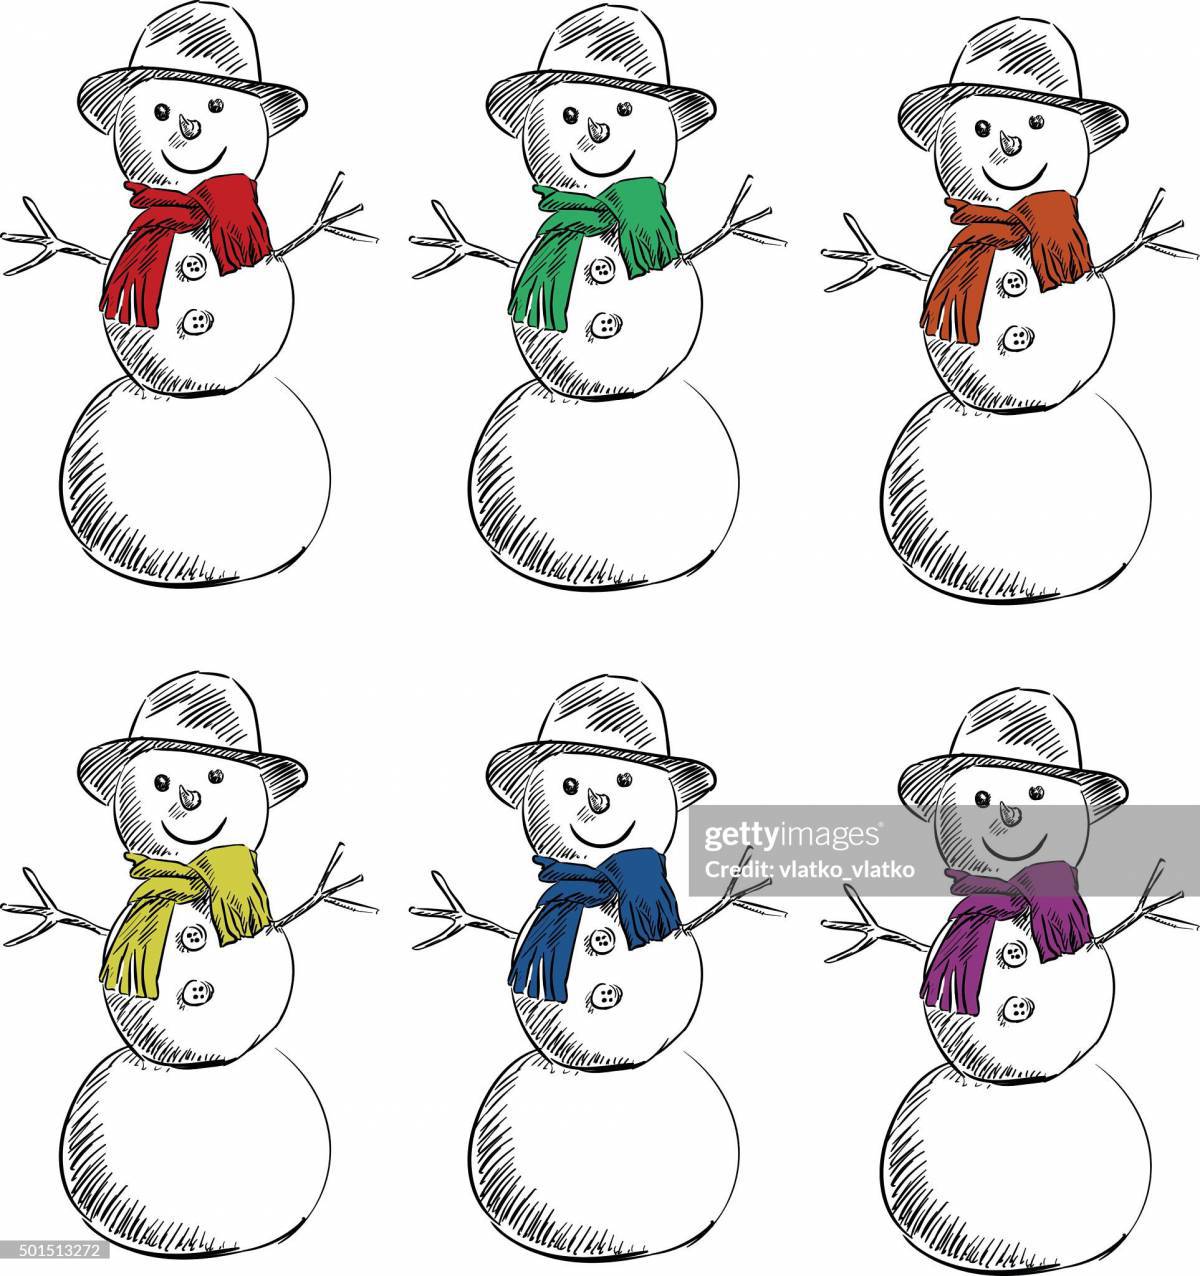 Снеговик для детей 6 7 лет #32